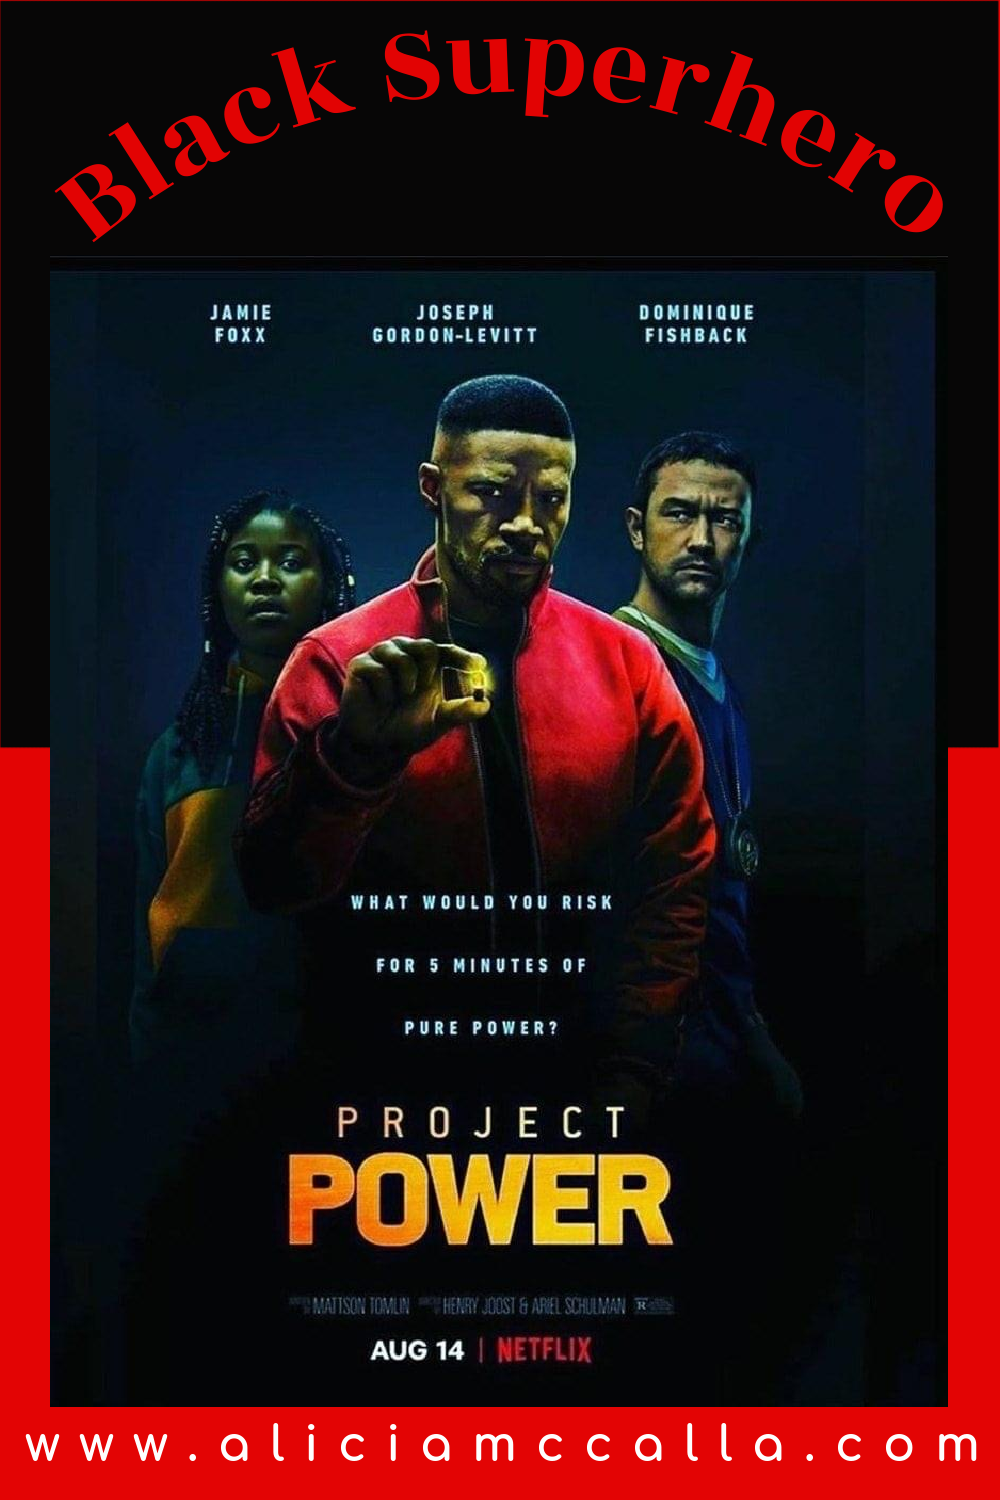 Black Male Superhero in Netflix’s Project Power